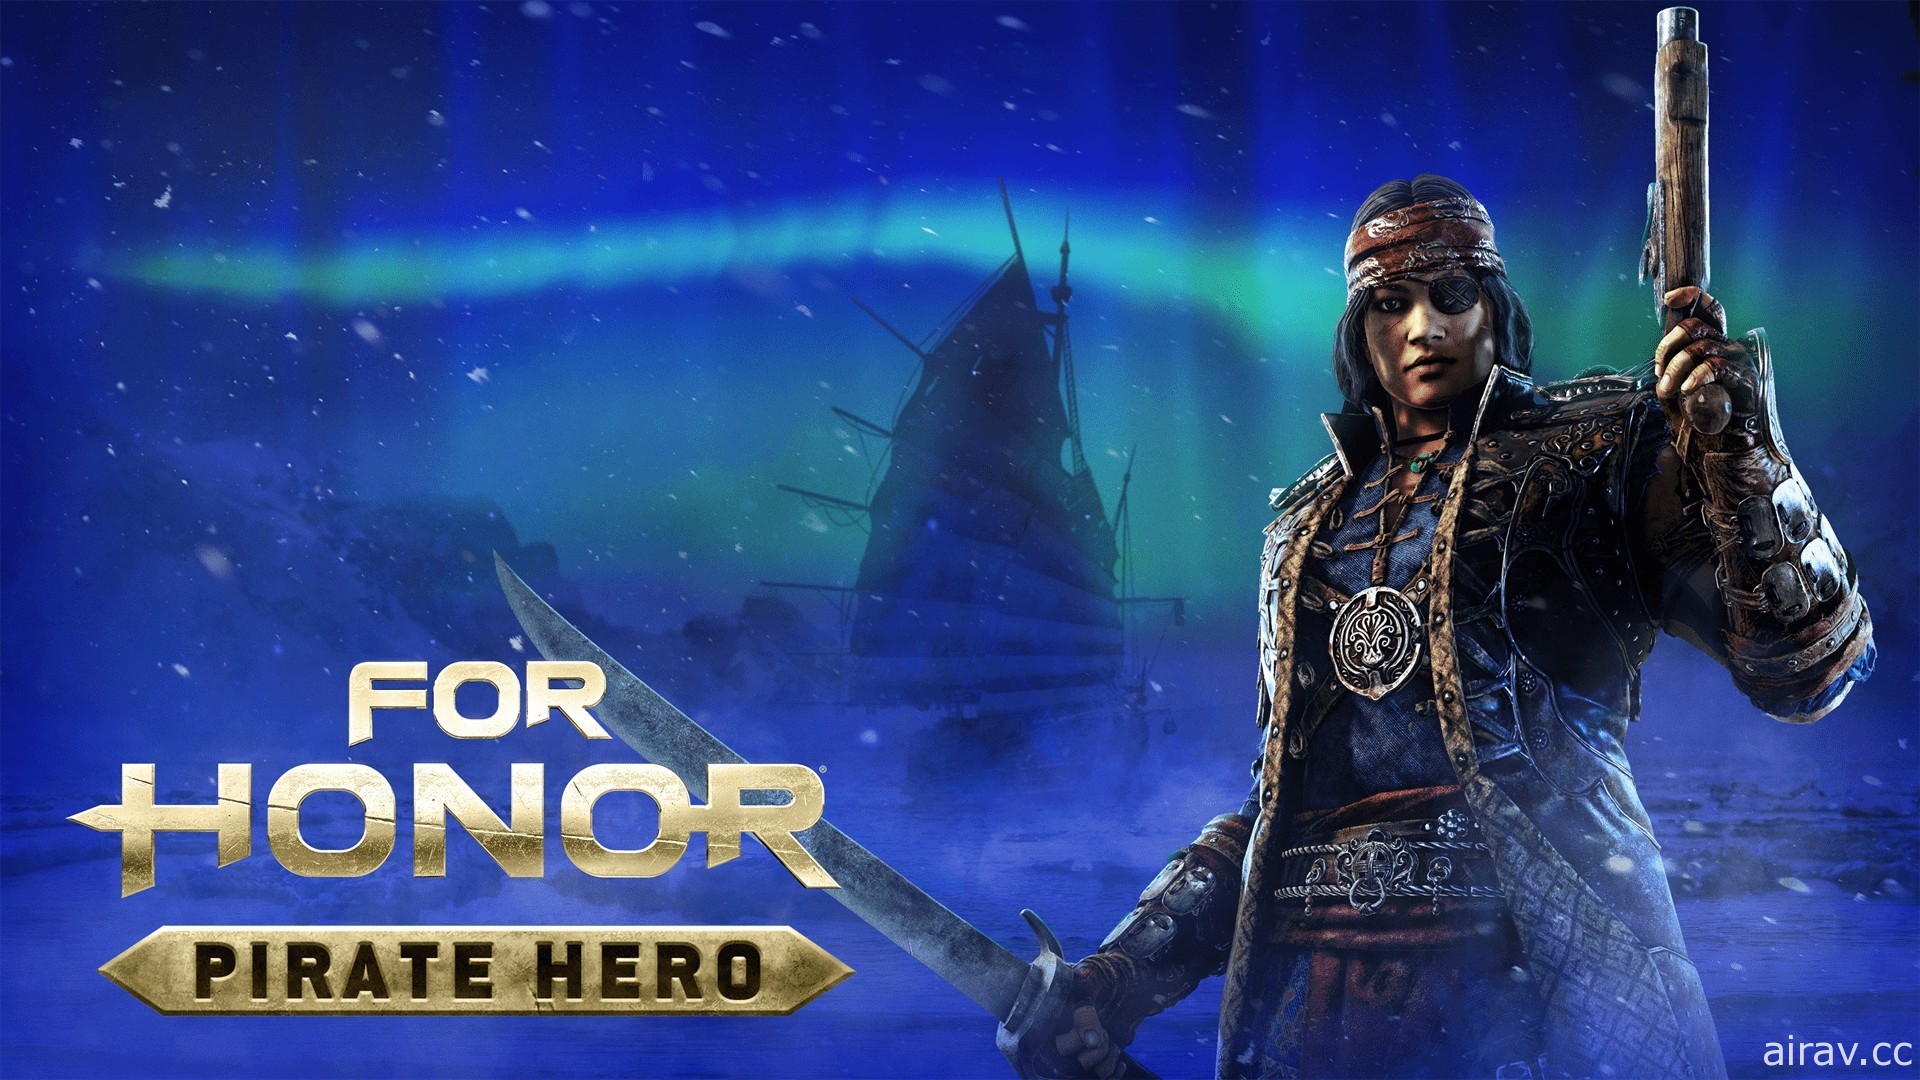 《榮耀戰魂》最新英雄「海盜」正式登場 即日起至 1/31 開放限時免費遊玩